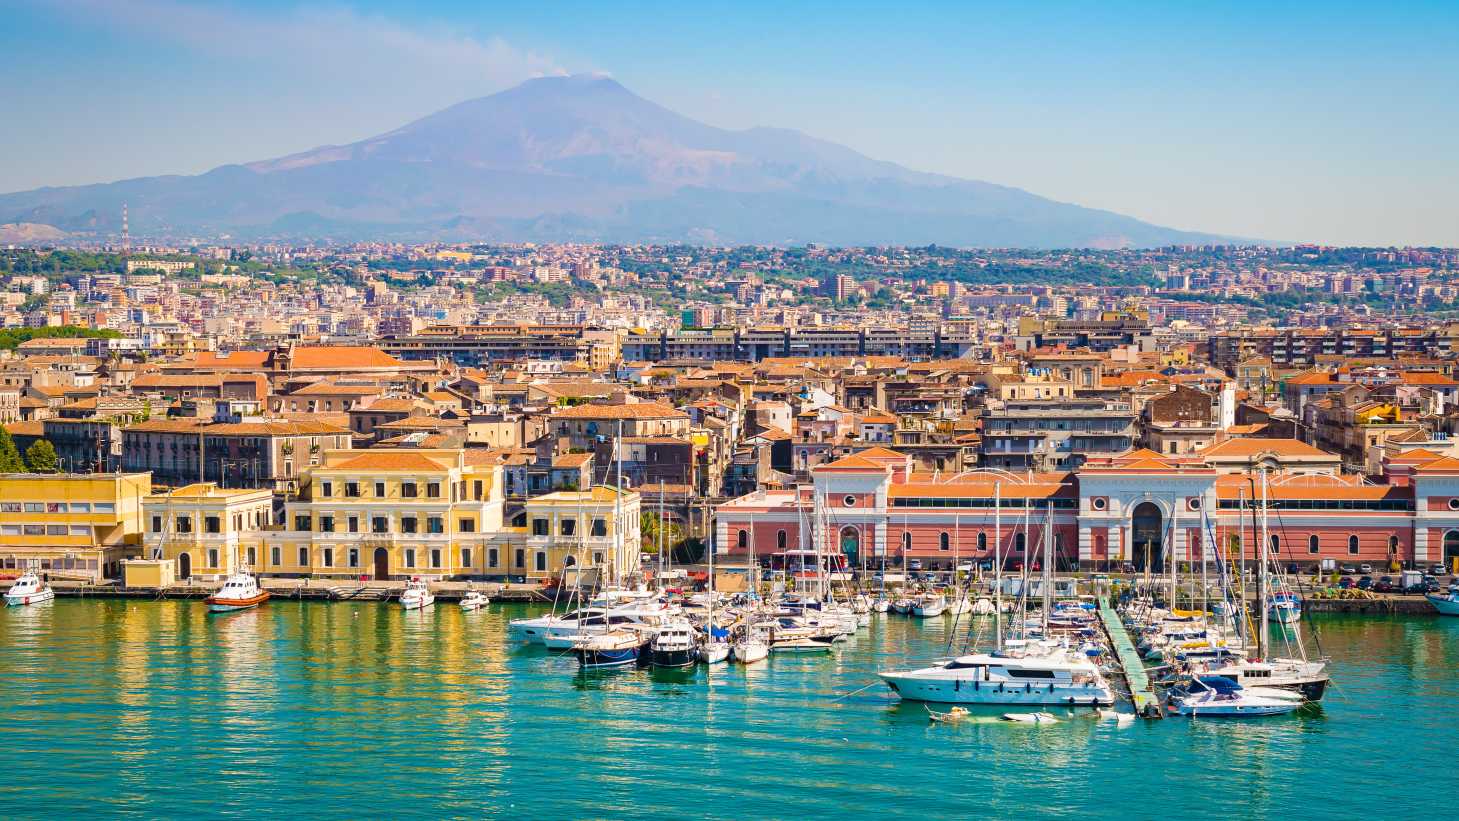 Blick auf den Kreuzfahrthafen von Catania, den Sie während Ihres Aufenthalts entdecken können.